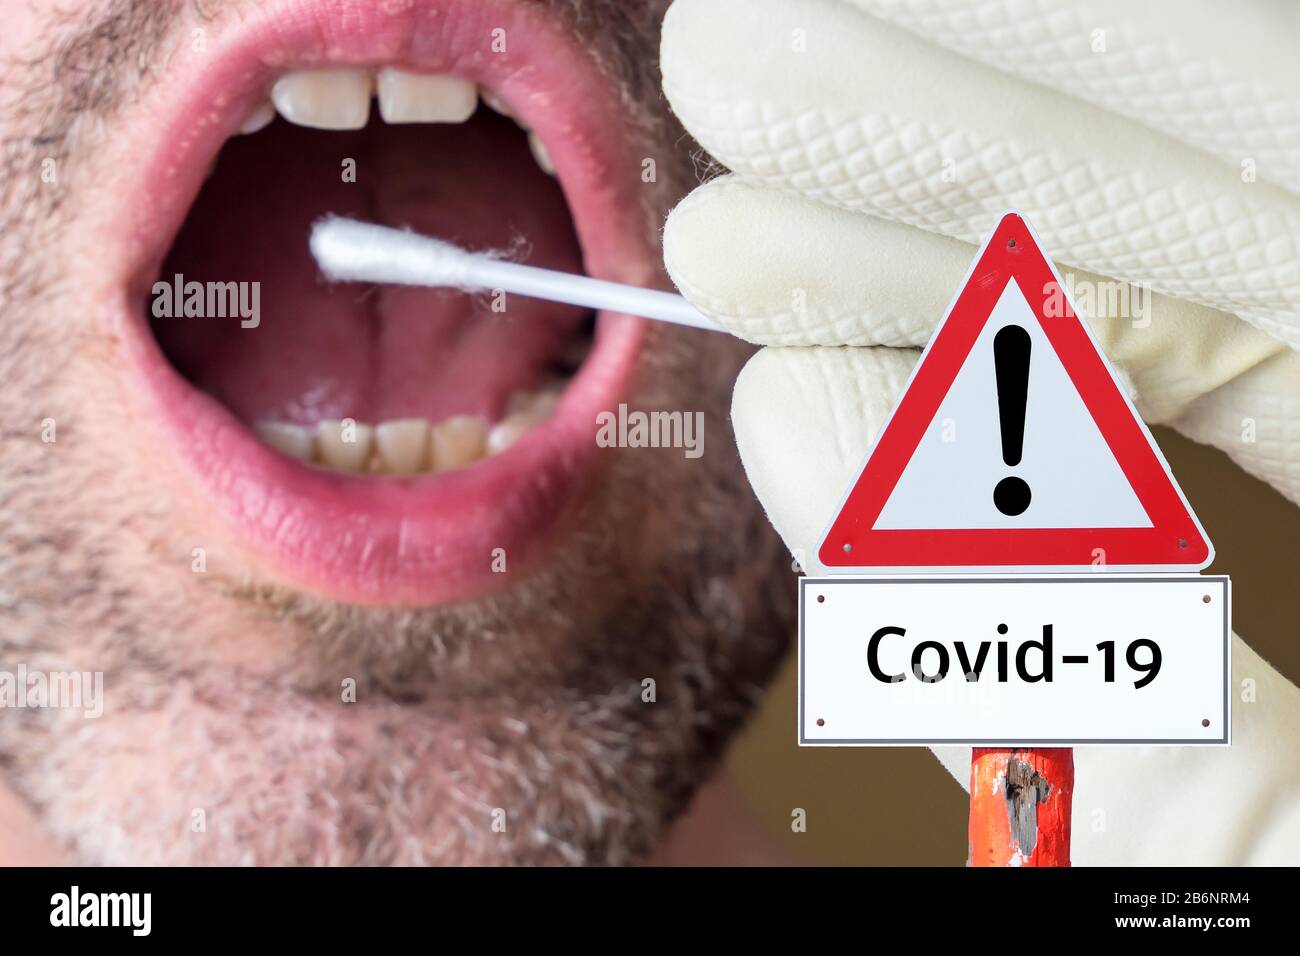 Warning sign Covid-19 Coronavirus flu Stock Photo